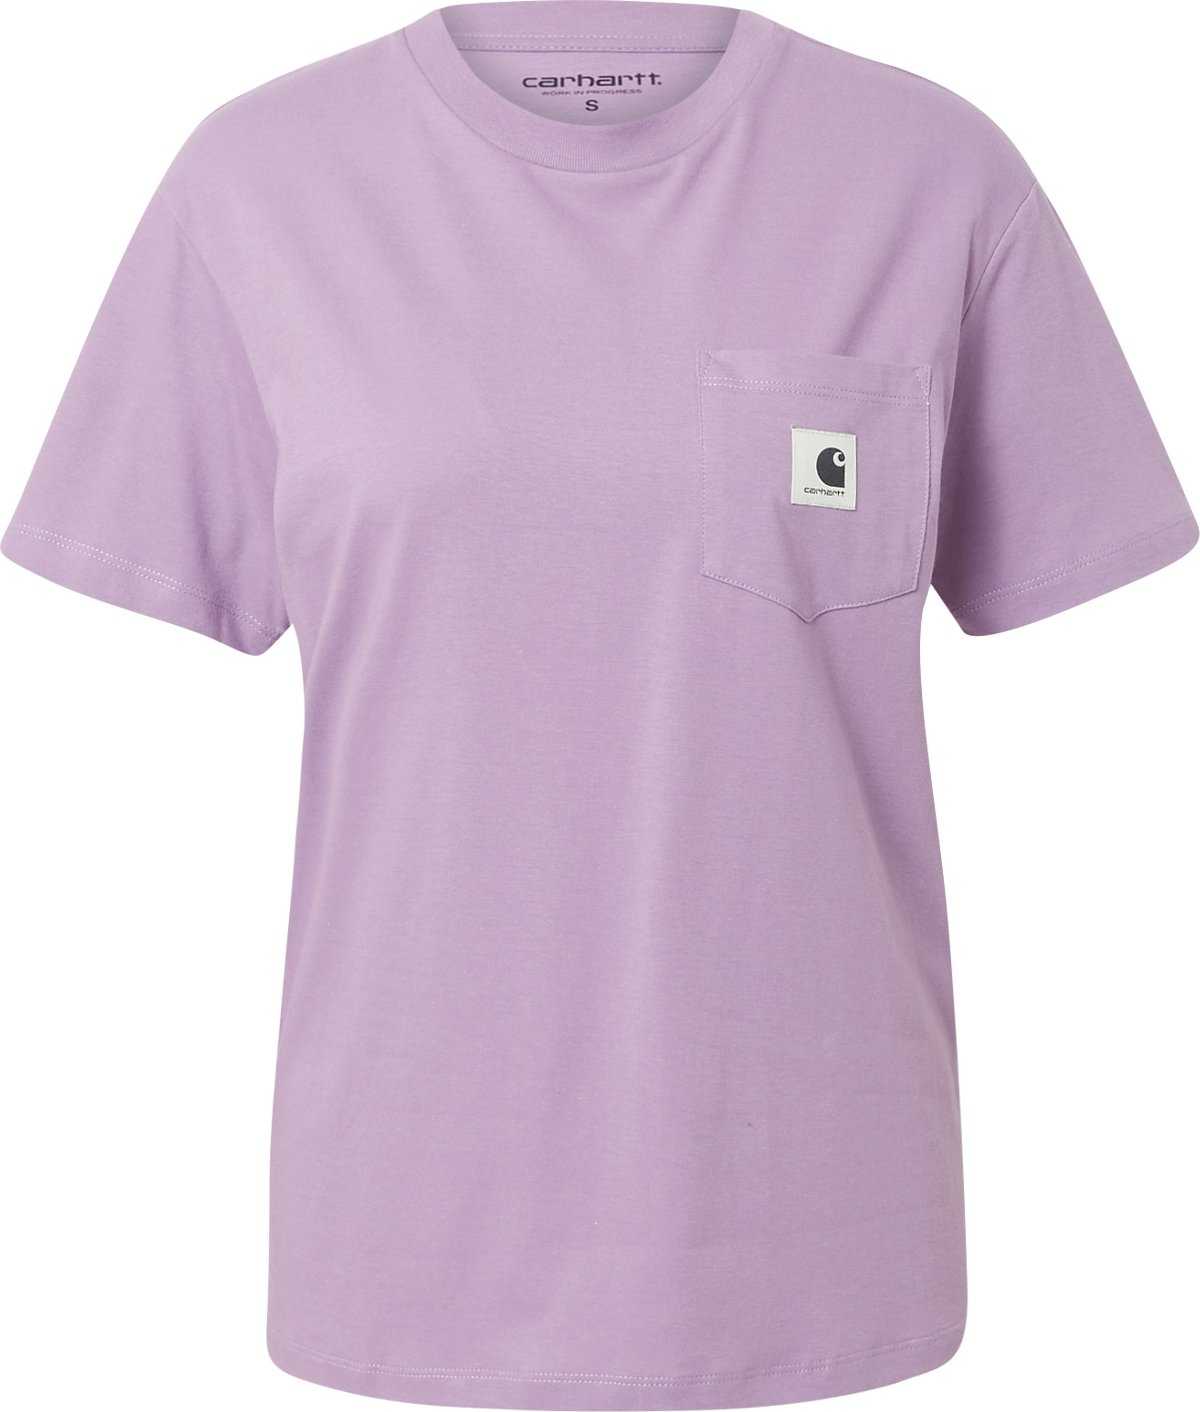 Carhartt WIP Tričko pastelová fialová / černá / bílá